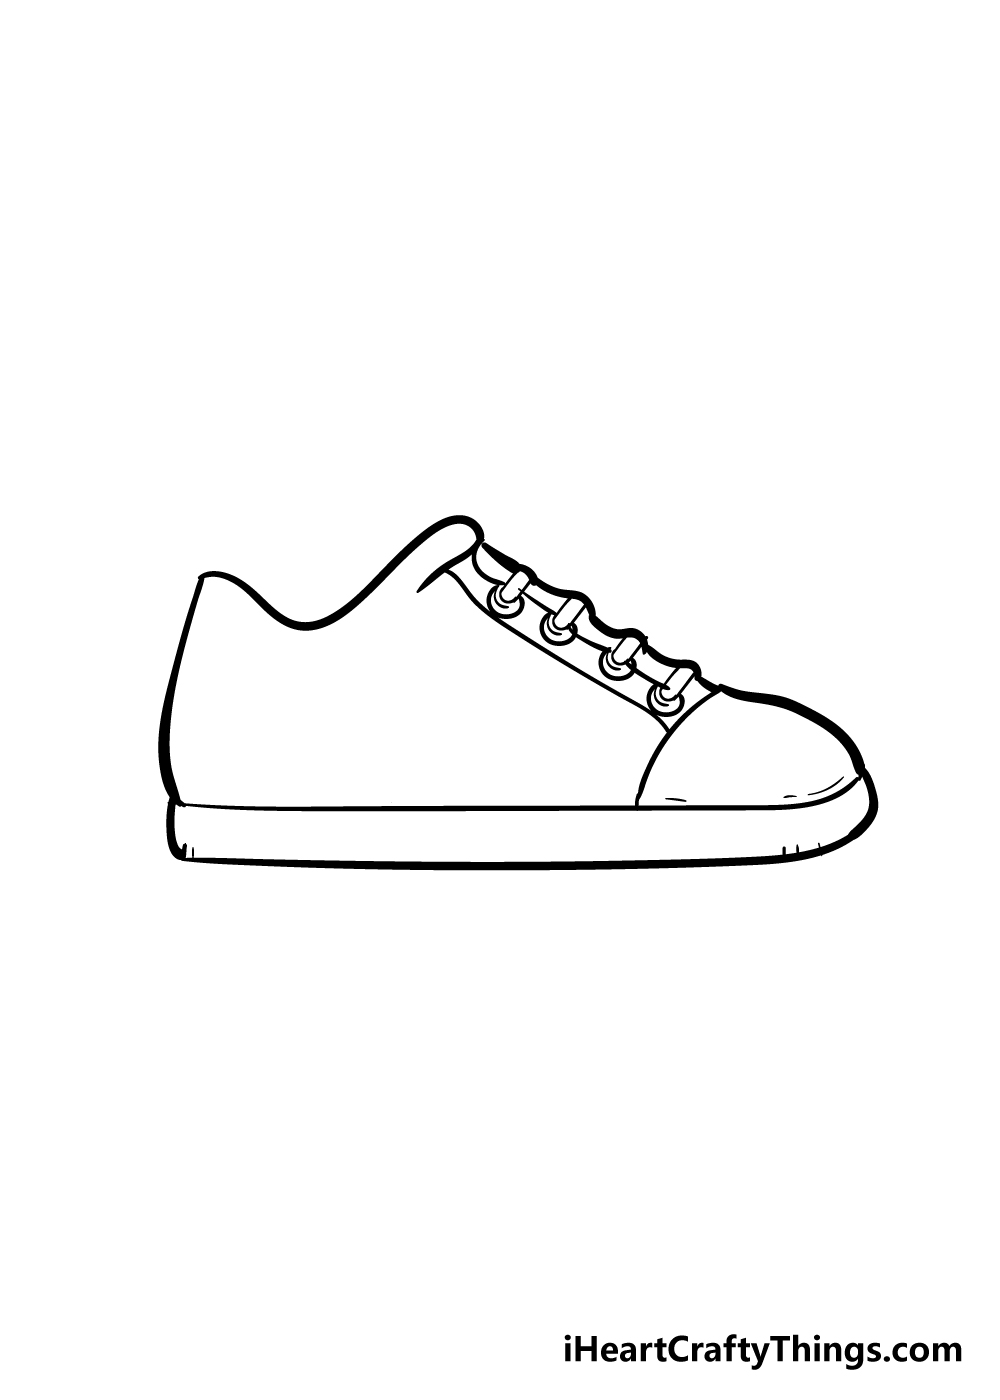 Shoes4 - Hướng dẫn Cách vẽ đôi giày đơn giản với 6 bước cơ bản